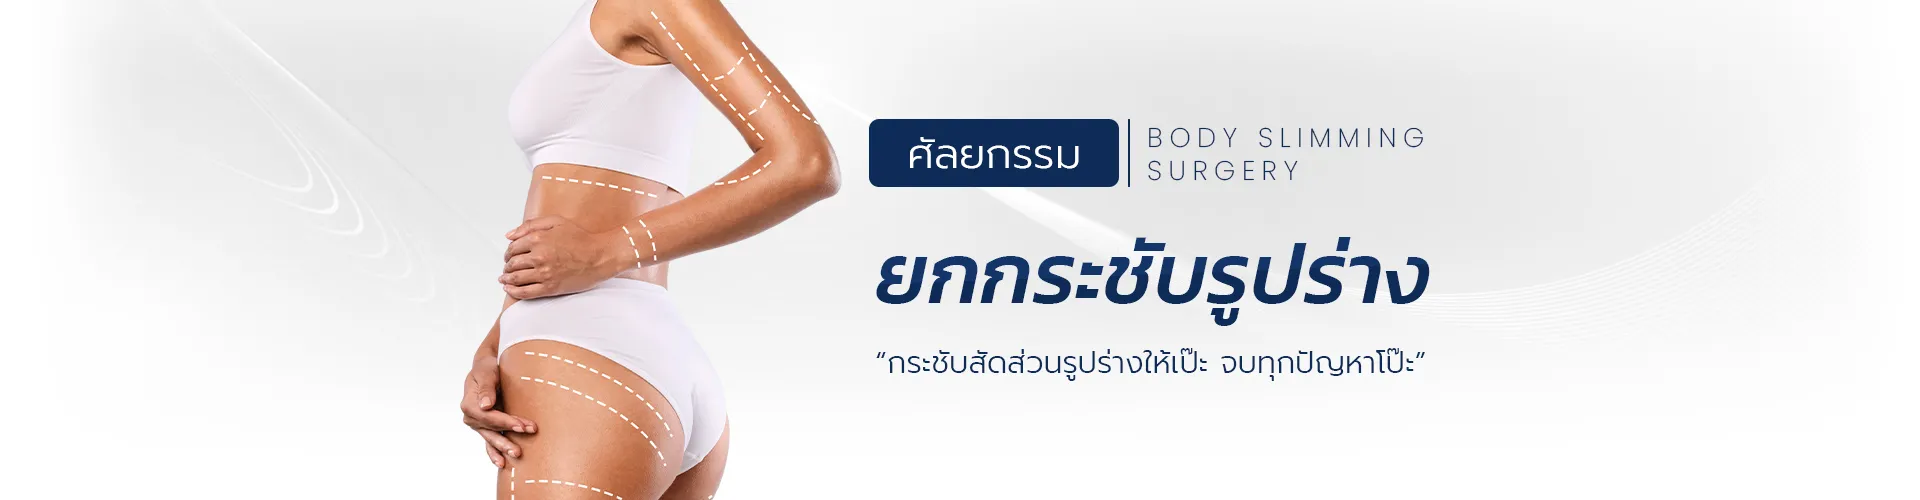 ผ่าตัดยกกระชับรูปร่าง, FFS Thailand